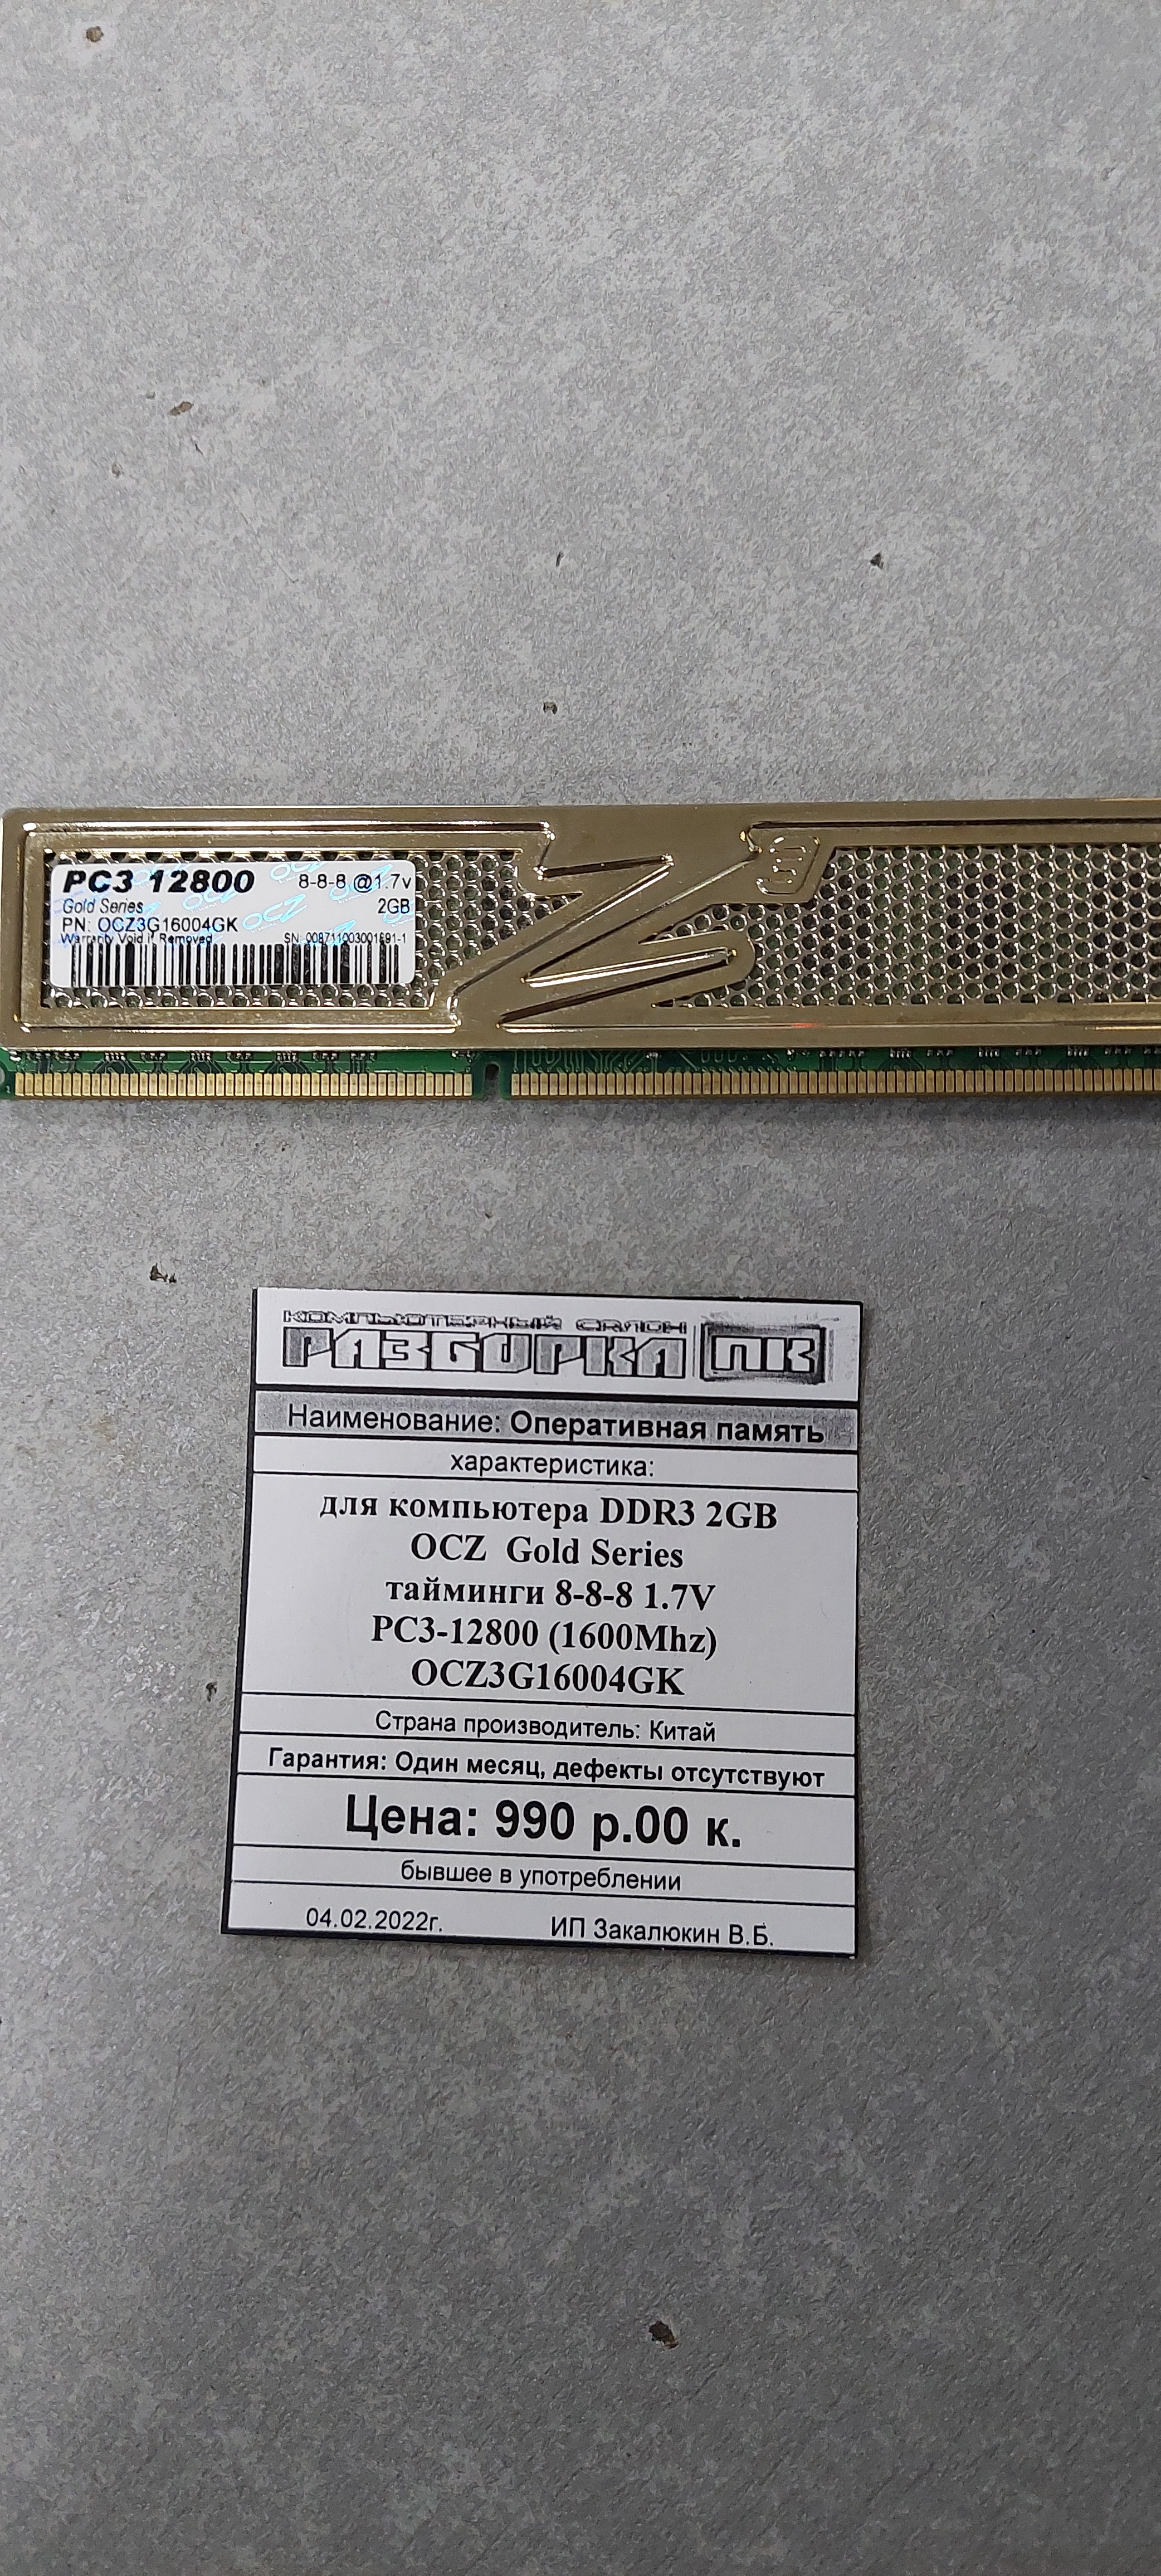 Оперативная память DIMM DDR3 2GB OCZ  Gold